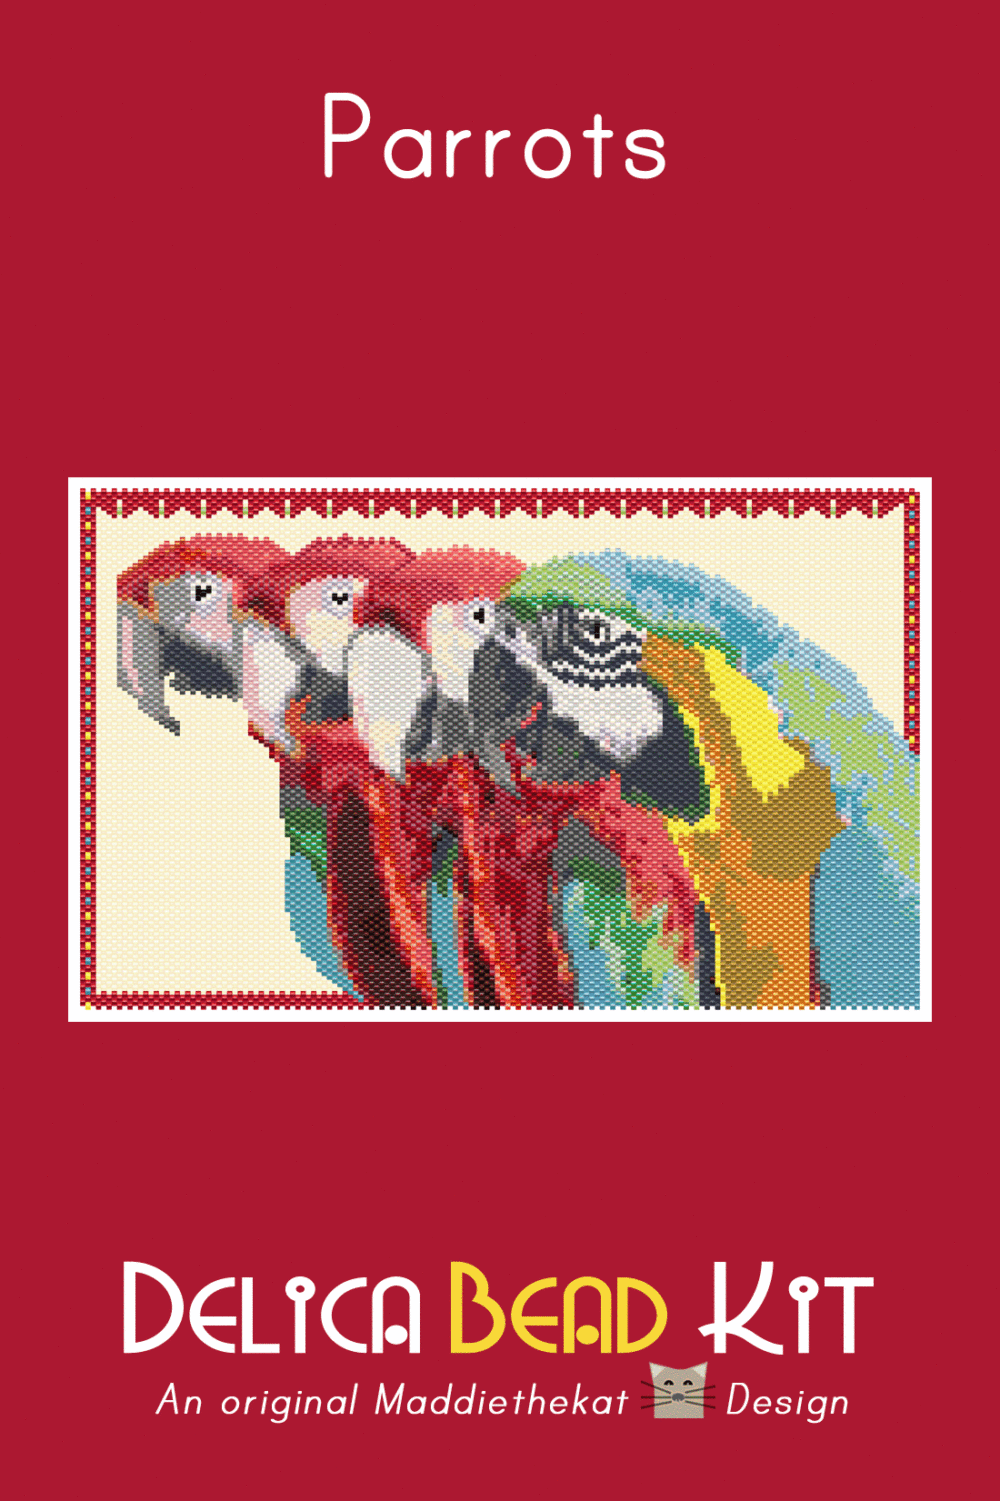 Parrots 01 Larger Peyote Bead Pattern PDF or Bead Kit